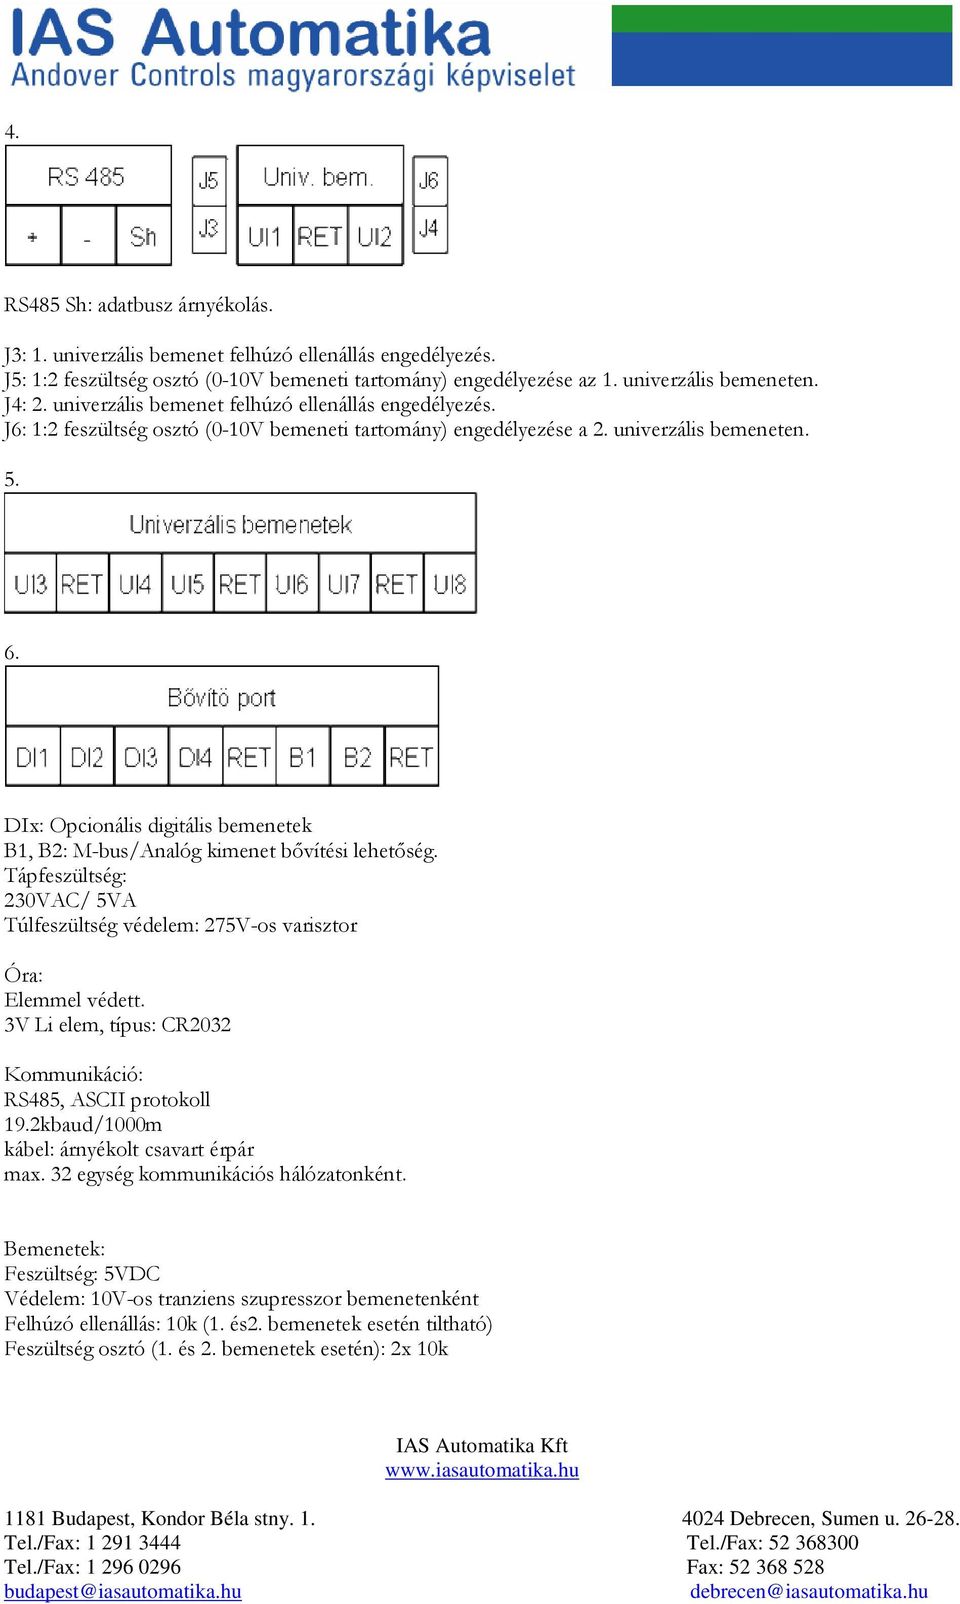 Kaméleon K860. IAS Automatika Kft - PDF Ingyenes letöltés